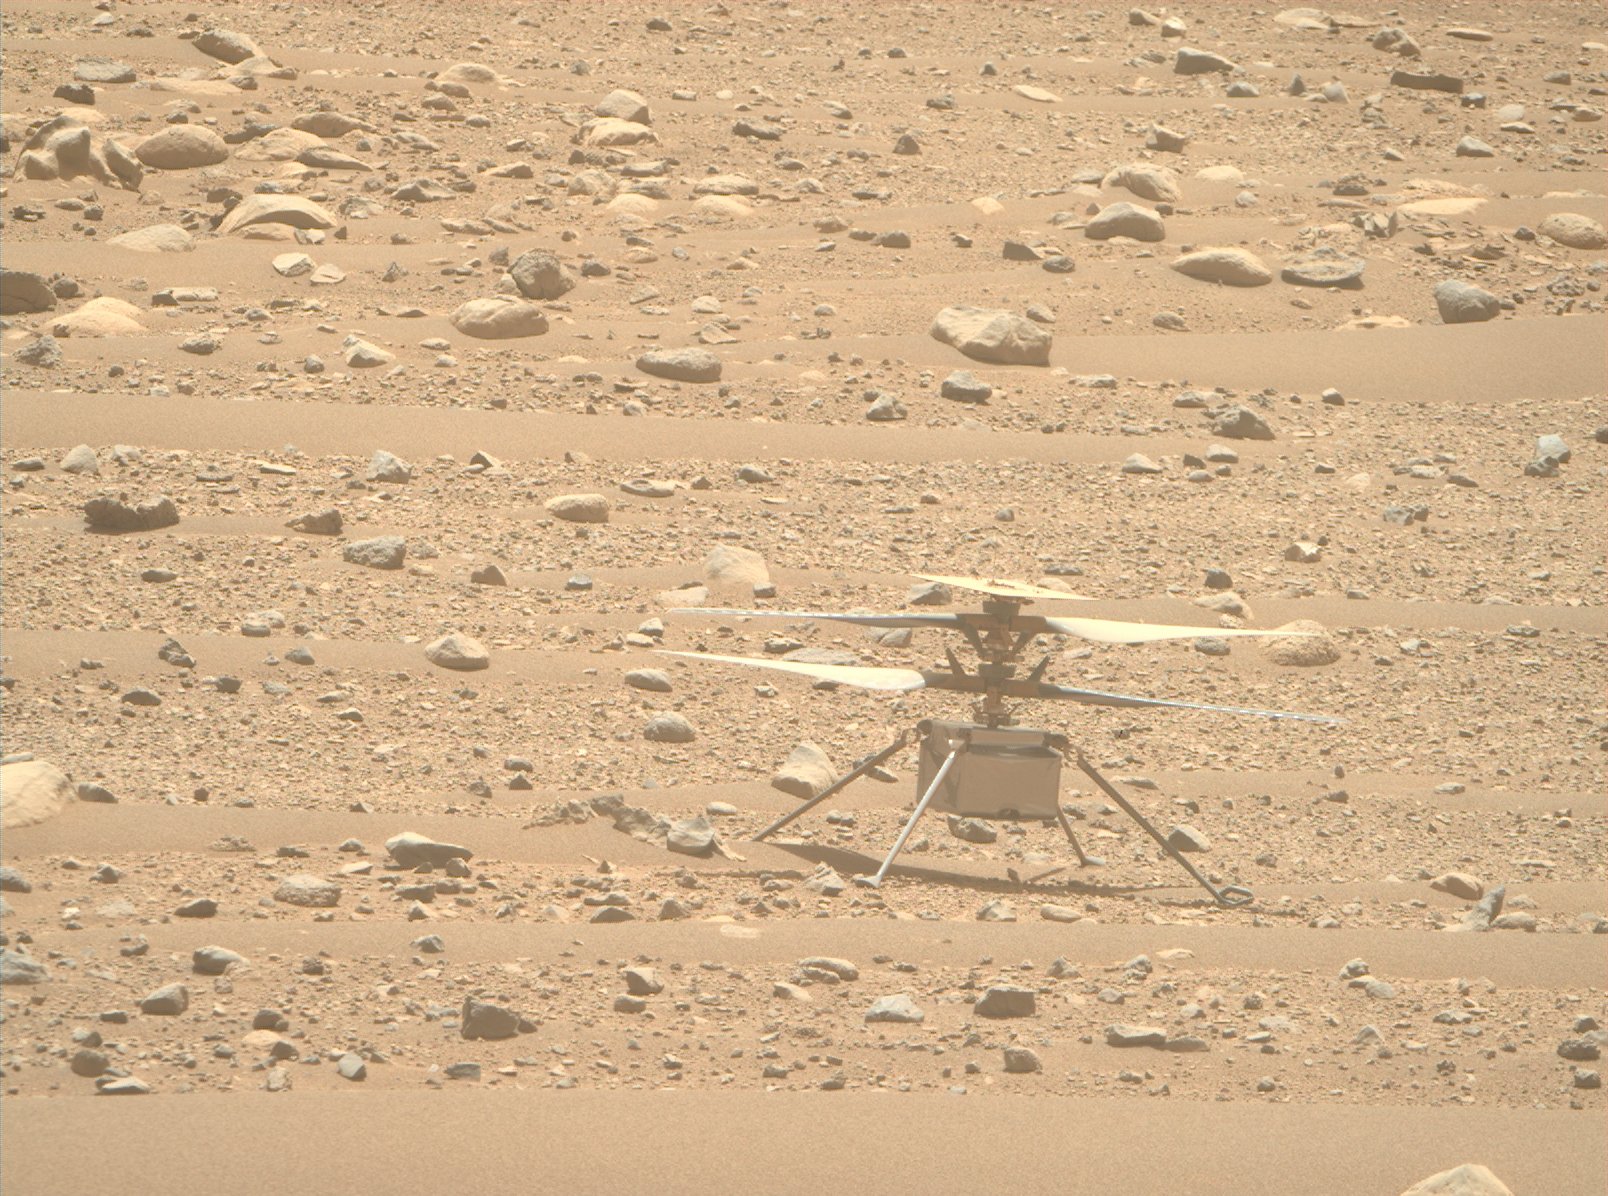 दृढ़ता रोवर द्वारा ली गई छवि में मंगल की सतह पर Ingenuity हेलीकाप्टर। Ingenuity ने हाल ही में अपनी 50वीं उड़ान भरी है।